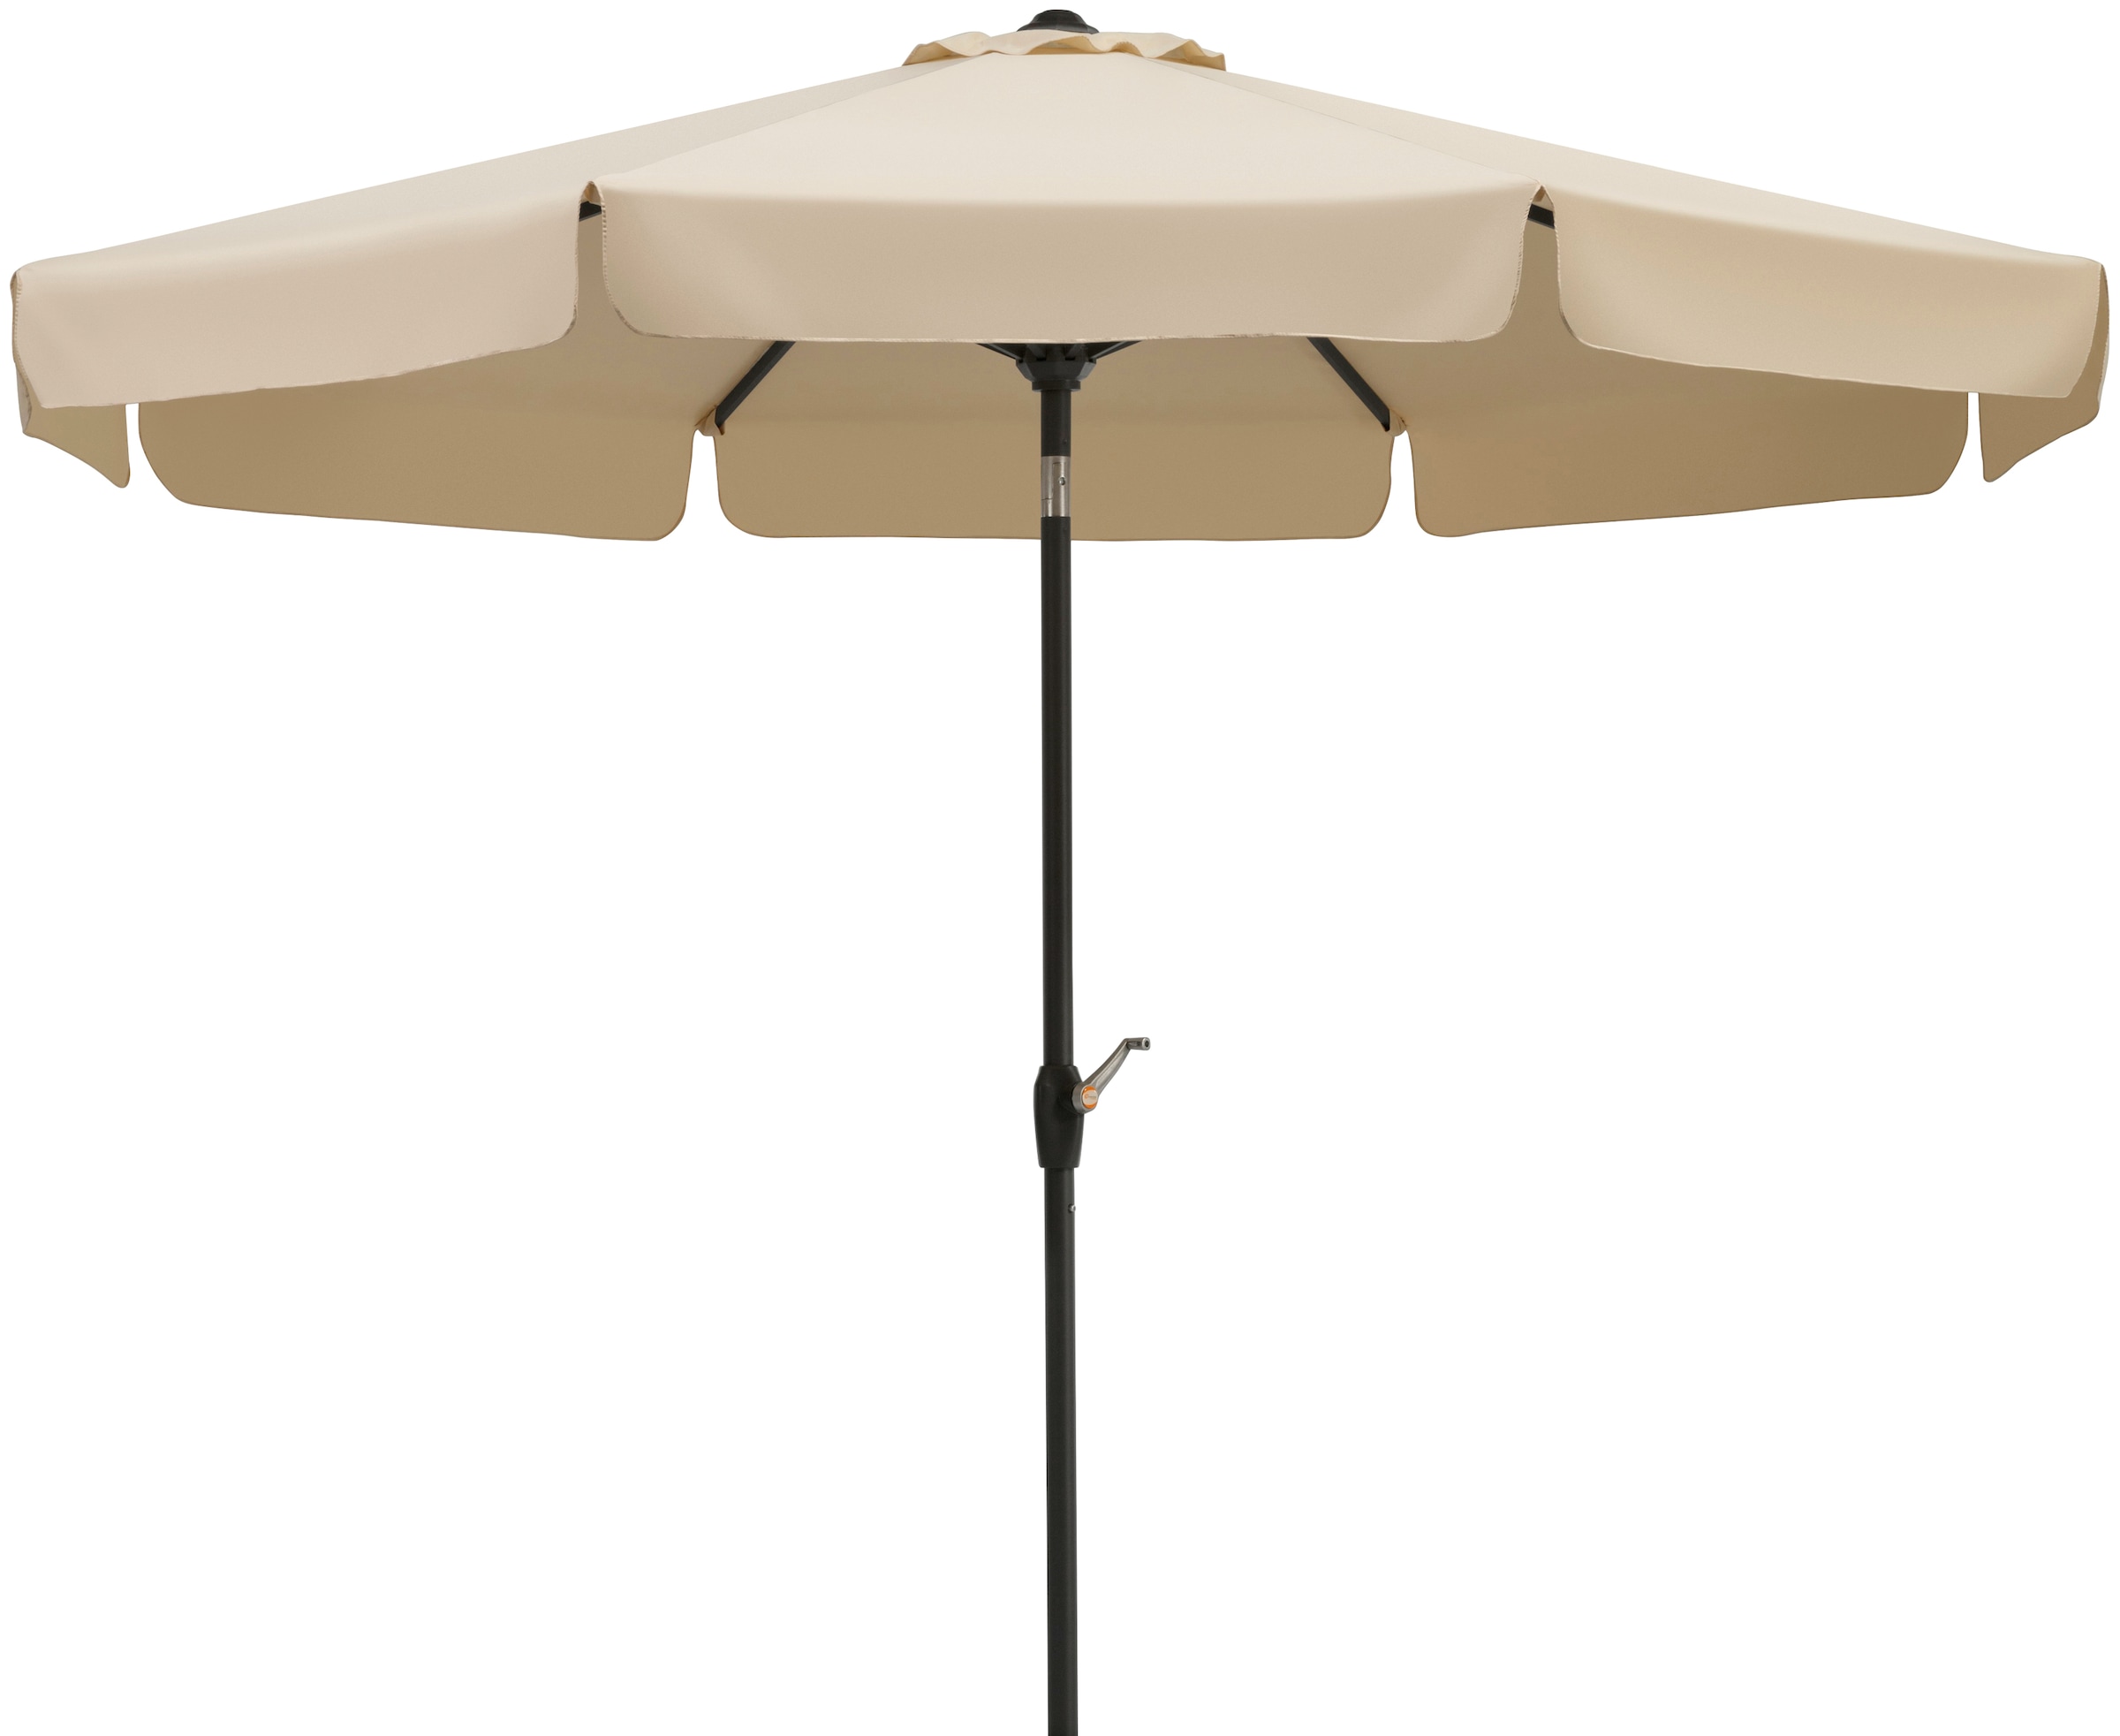 Schneider Schirme Marktschirm »Orlando«, Durchmesser 270 cm, natur, rund, ohne Schirmständer